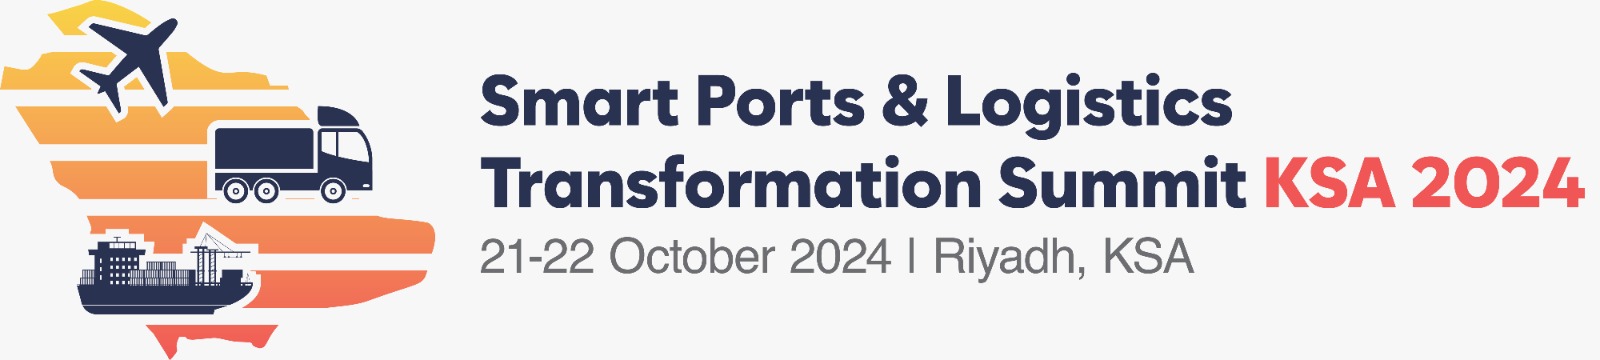 Smart Ports & Logistics Transformation Summit KSA 2024